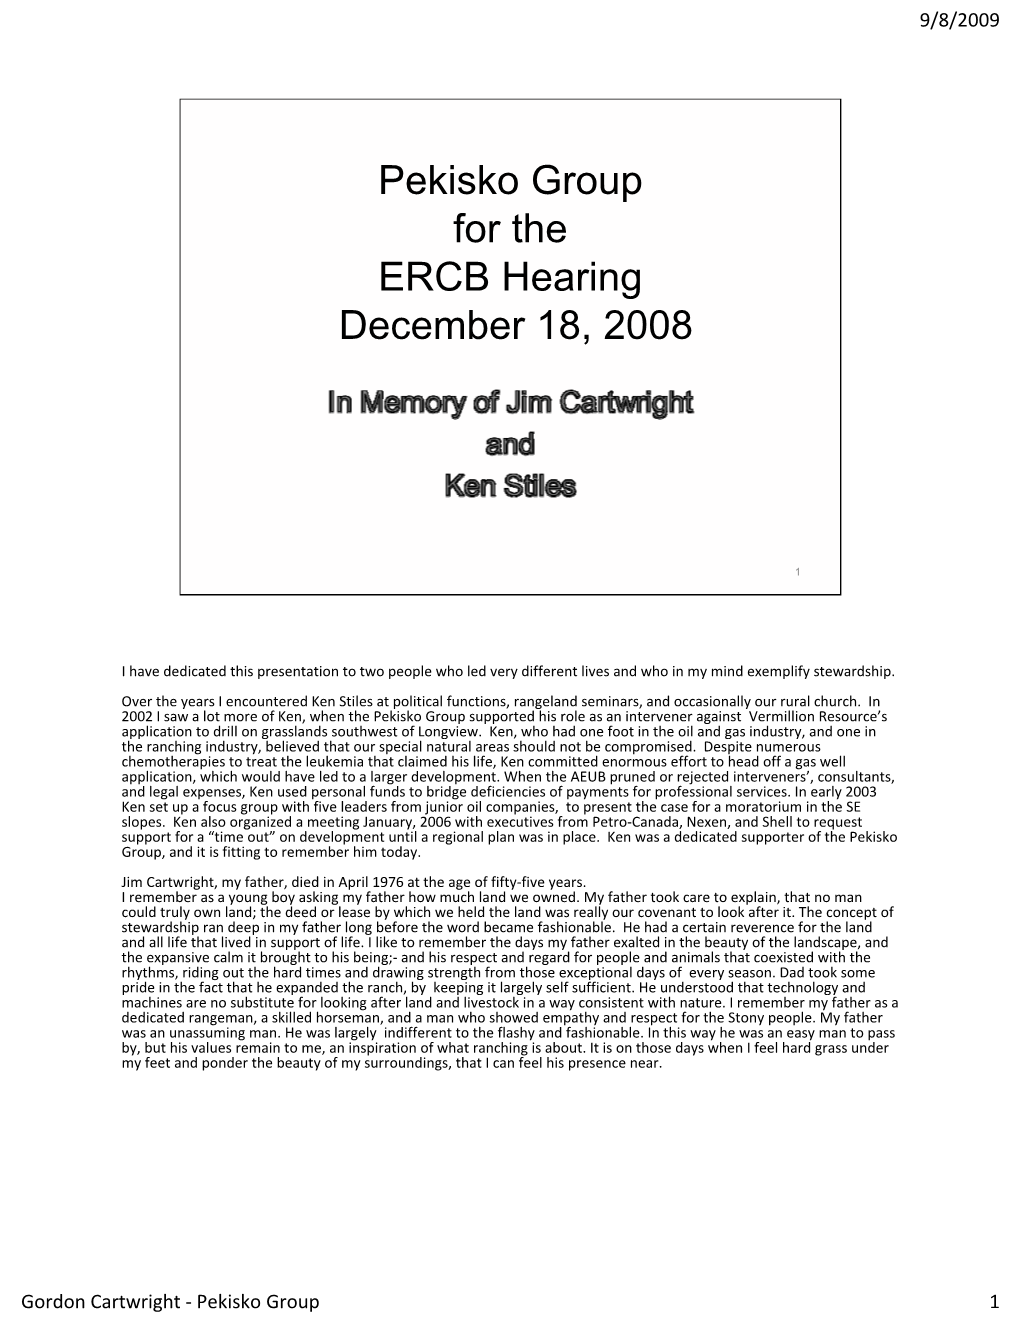 Pekisko Group for the ERCB Hearing December 18, 2008